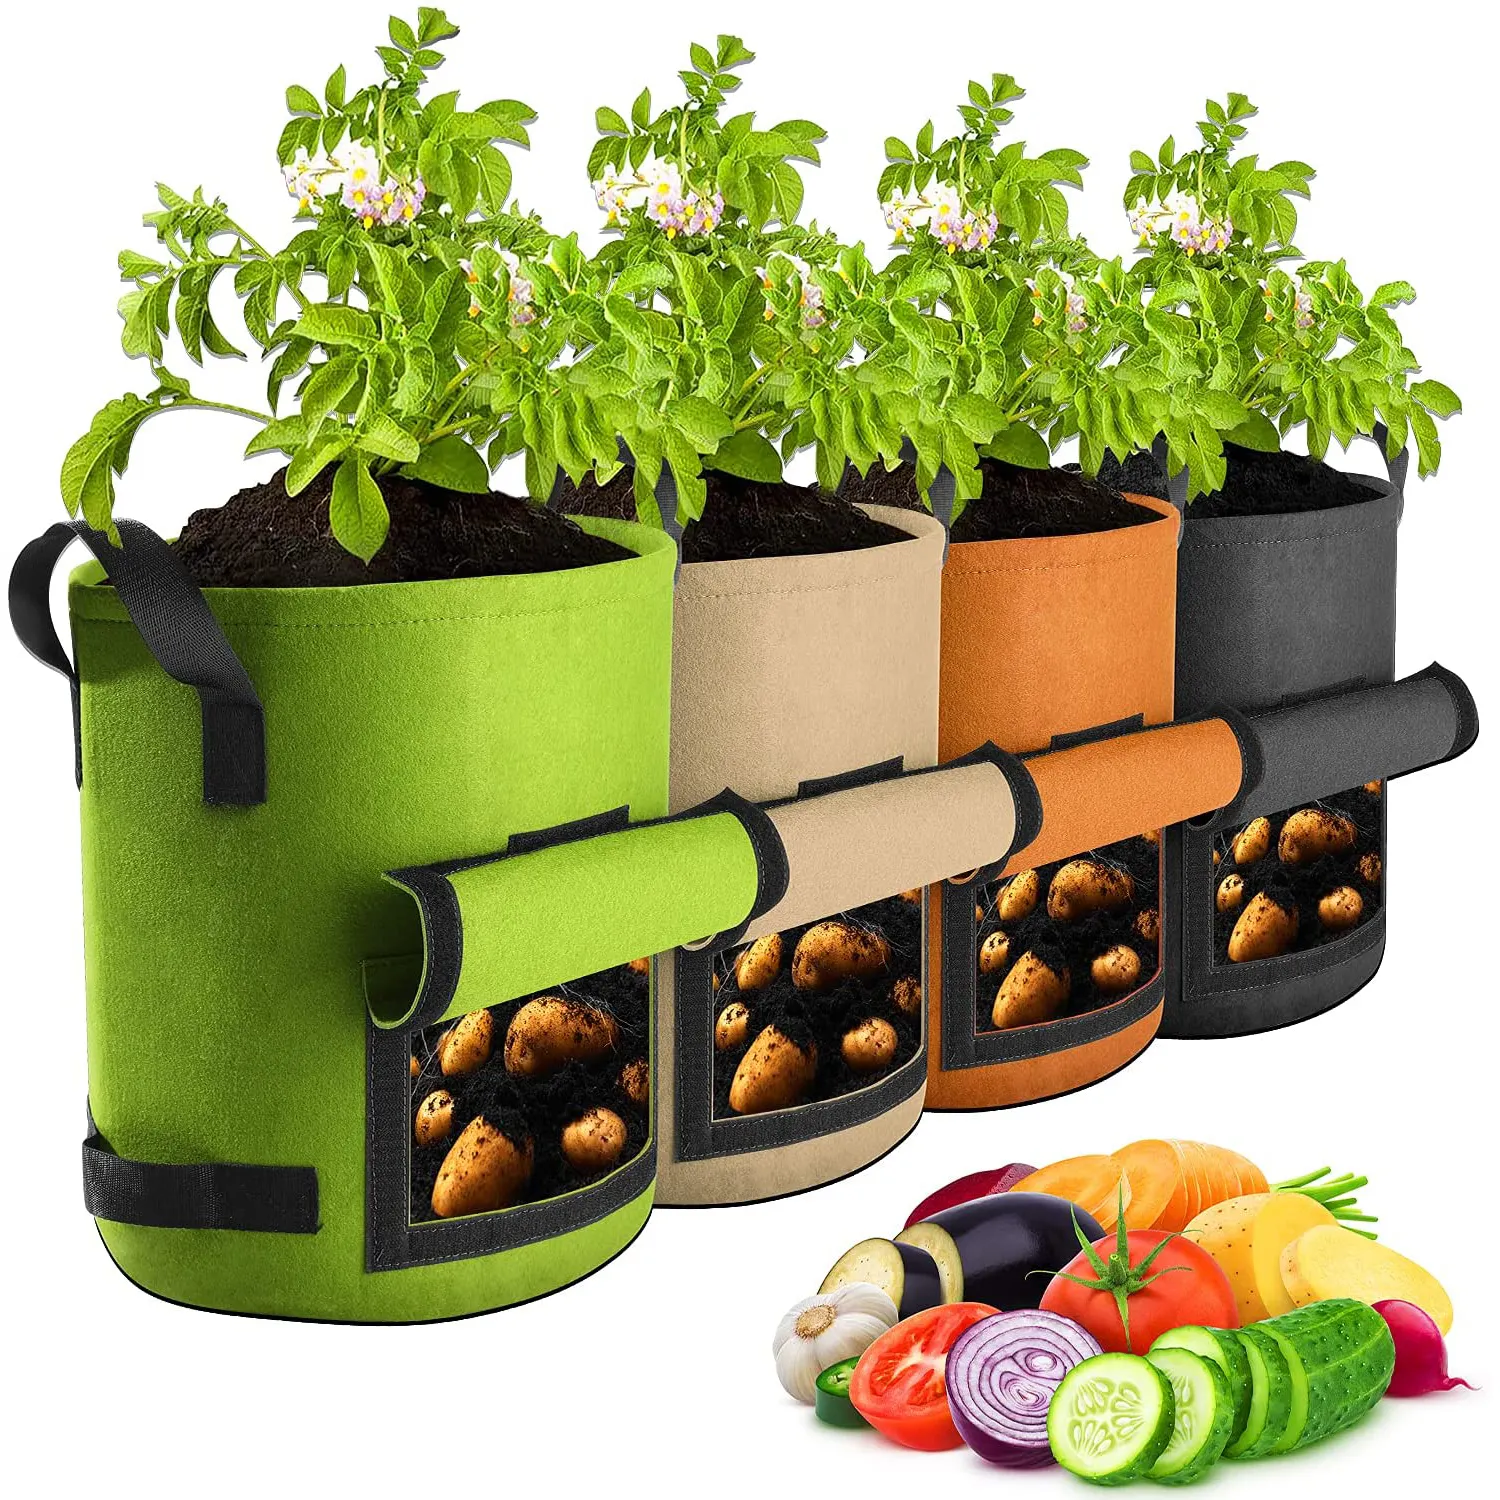 Bolsas de cultivo de patatas de 7 galones, Suntee contenedor de cultivo de plantas, bolsas de plantador de tela no tejida, bolsas de cultivo de verduras de jardín